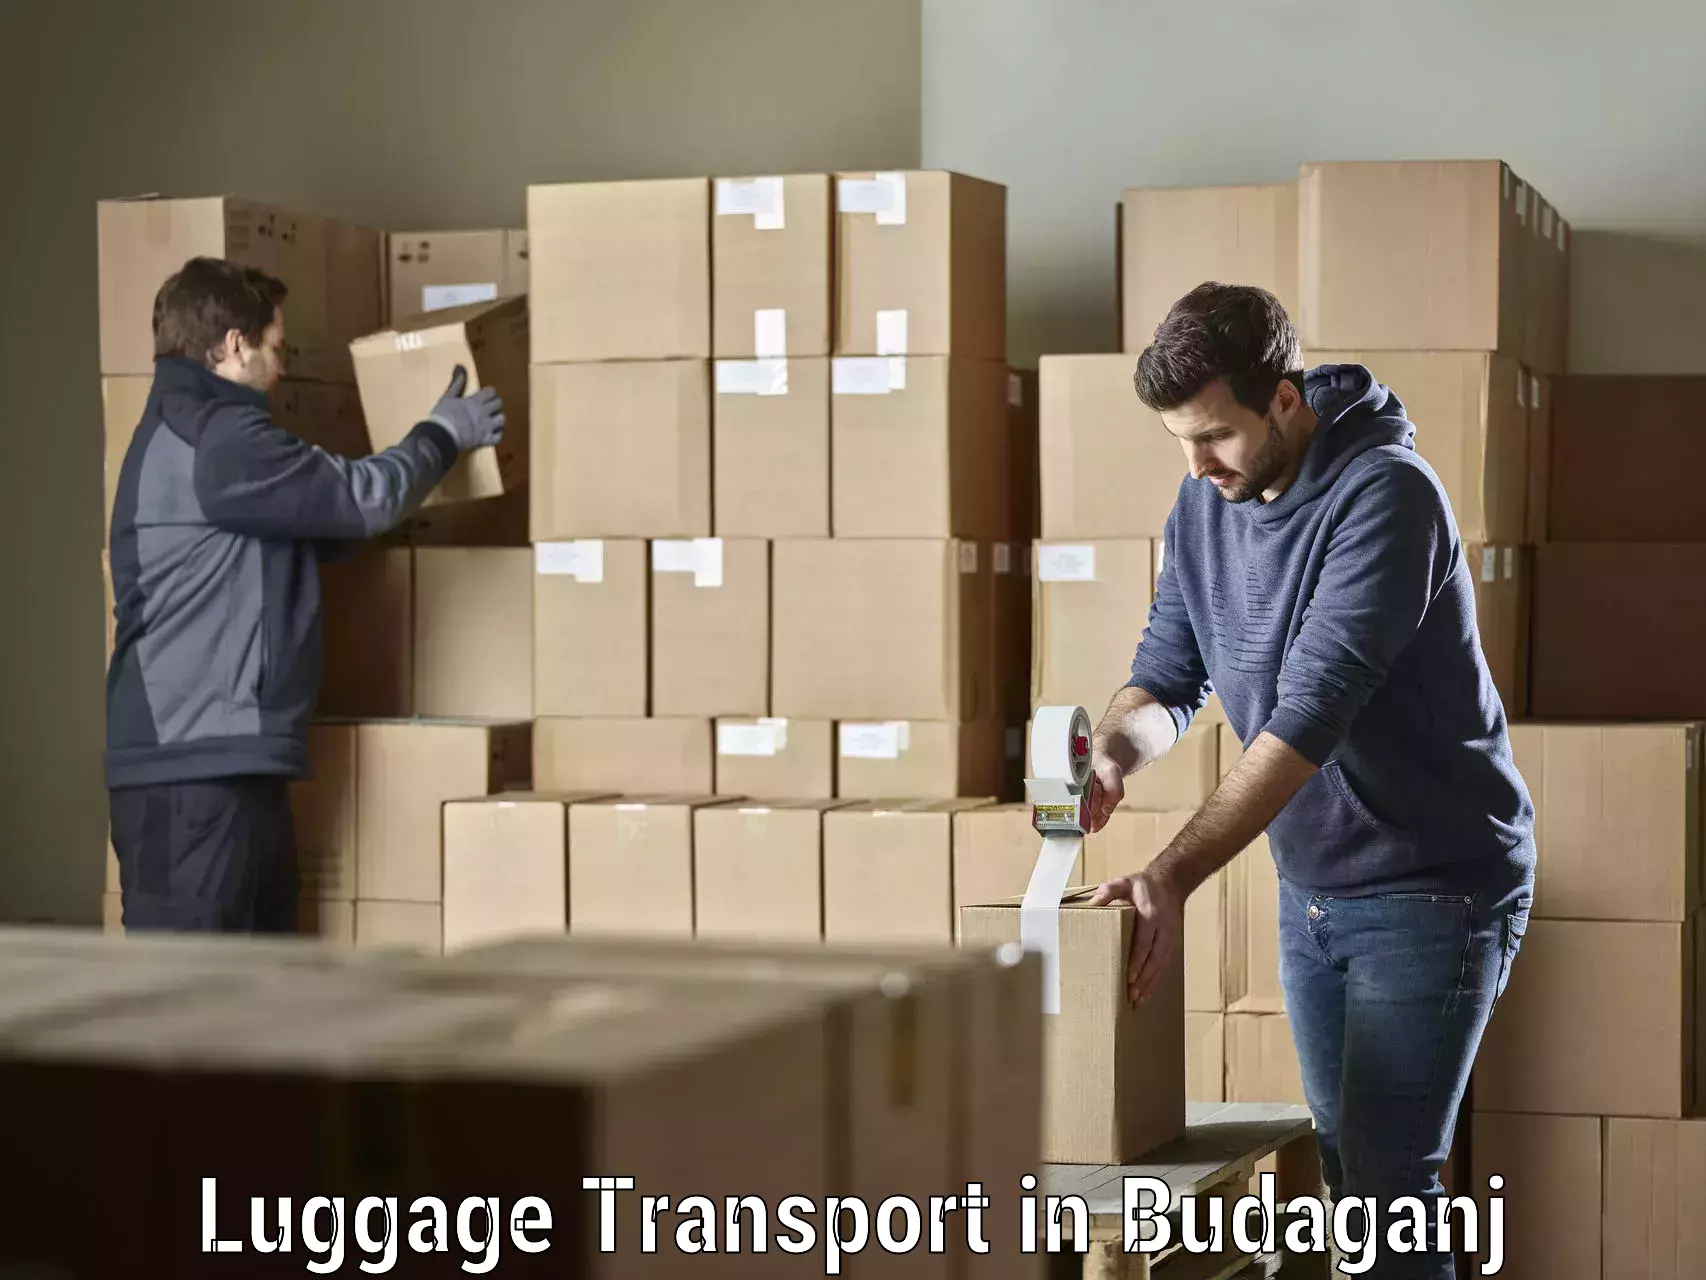 Baggage transport technology in Budaganj